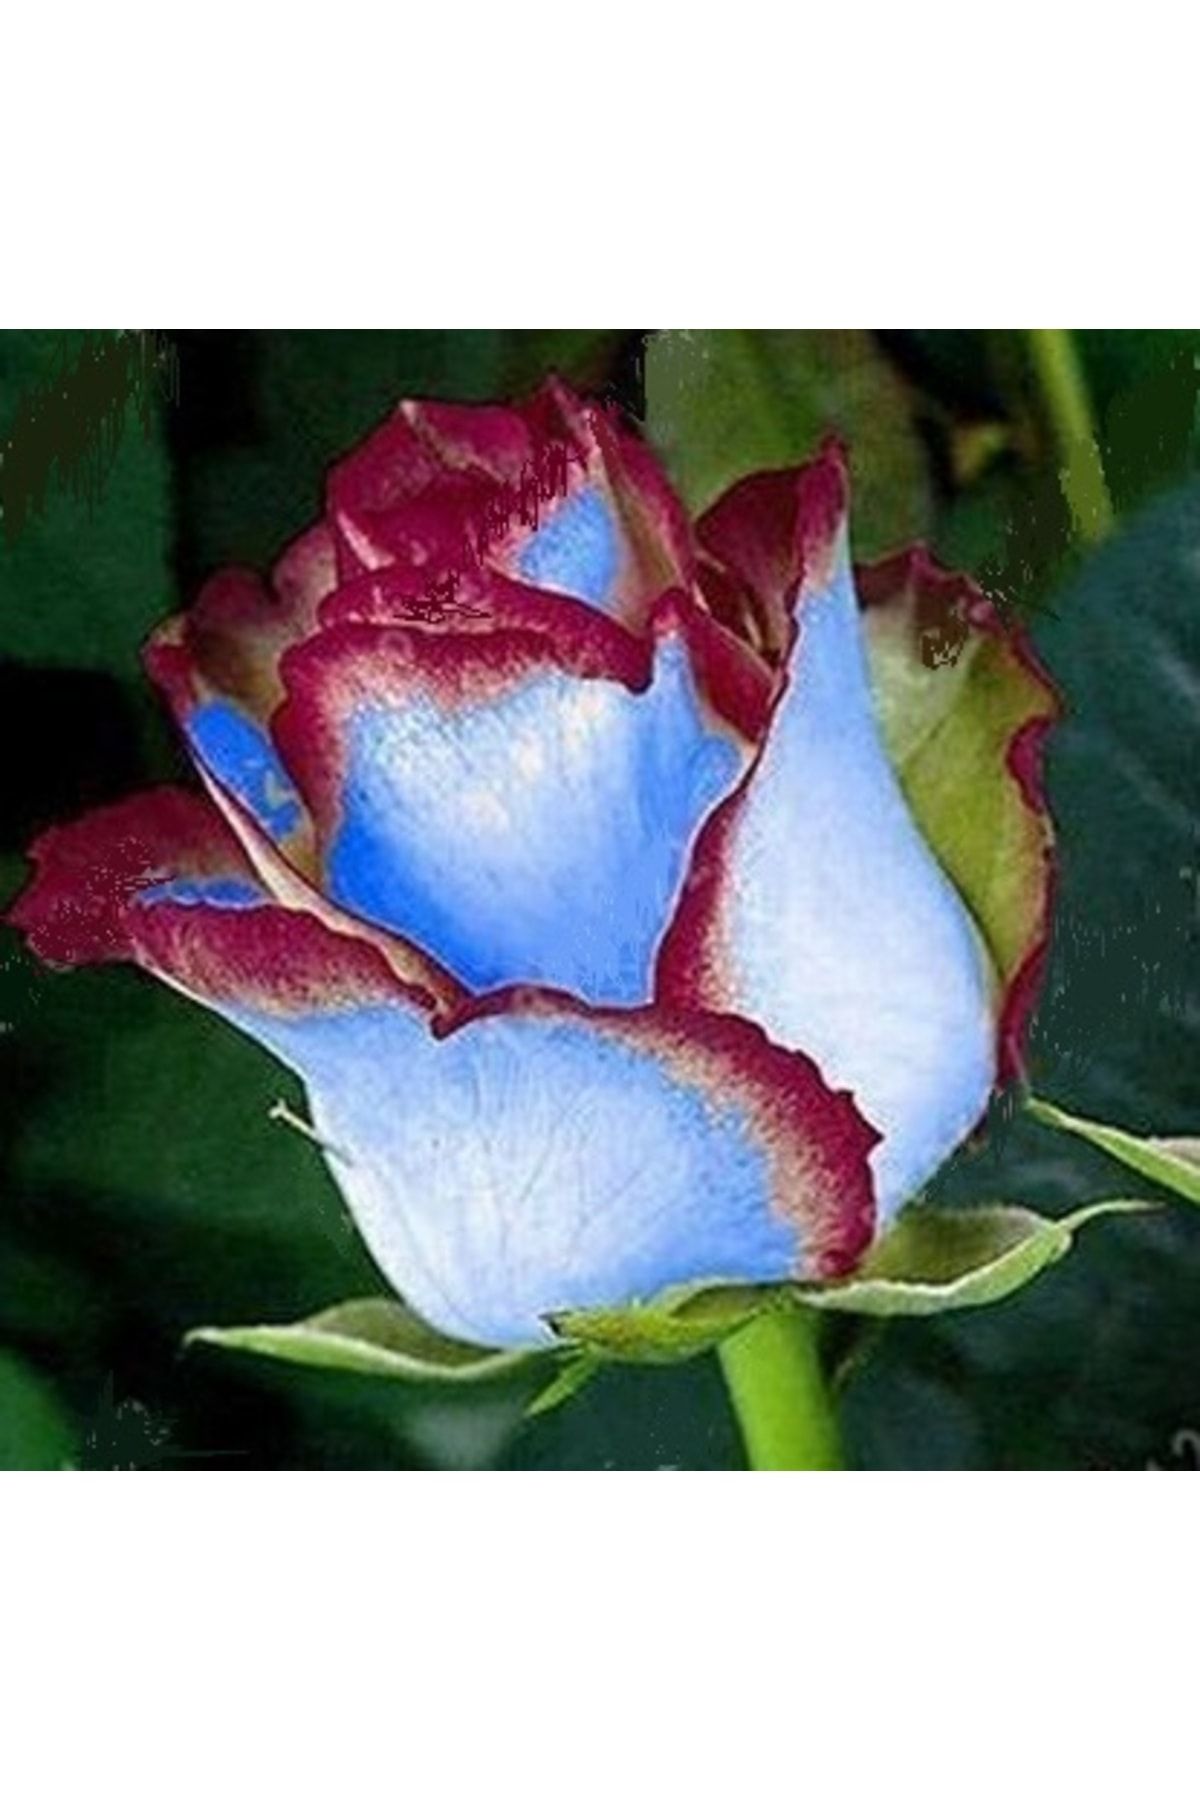 logitel 10 Adet Bordo Mavi Renk Gül Çiçek Tohumu + 10 Adet Hediye Karışık Renk Lale Çiçek Tohum